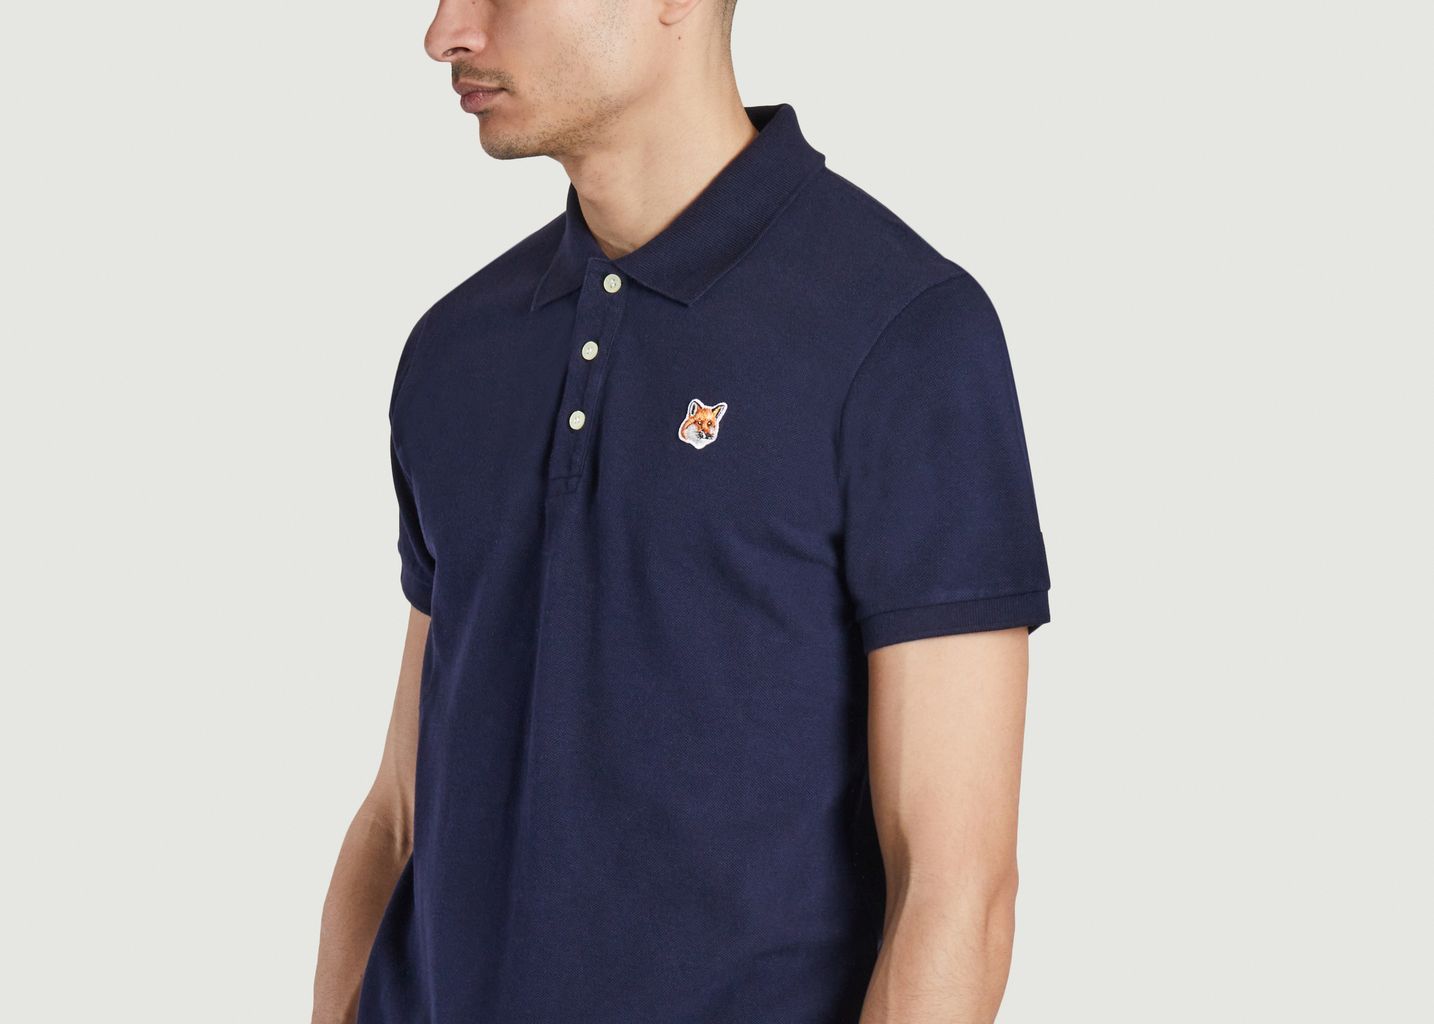 Cotton polo shirt with logo - Maison Kitsuné